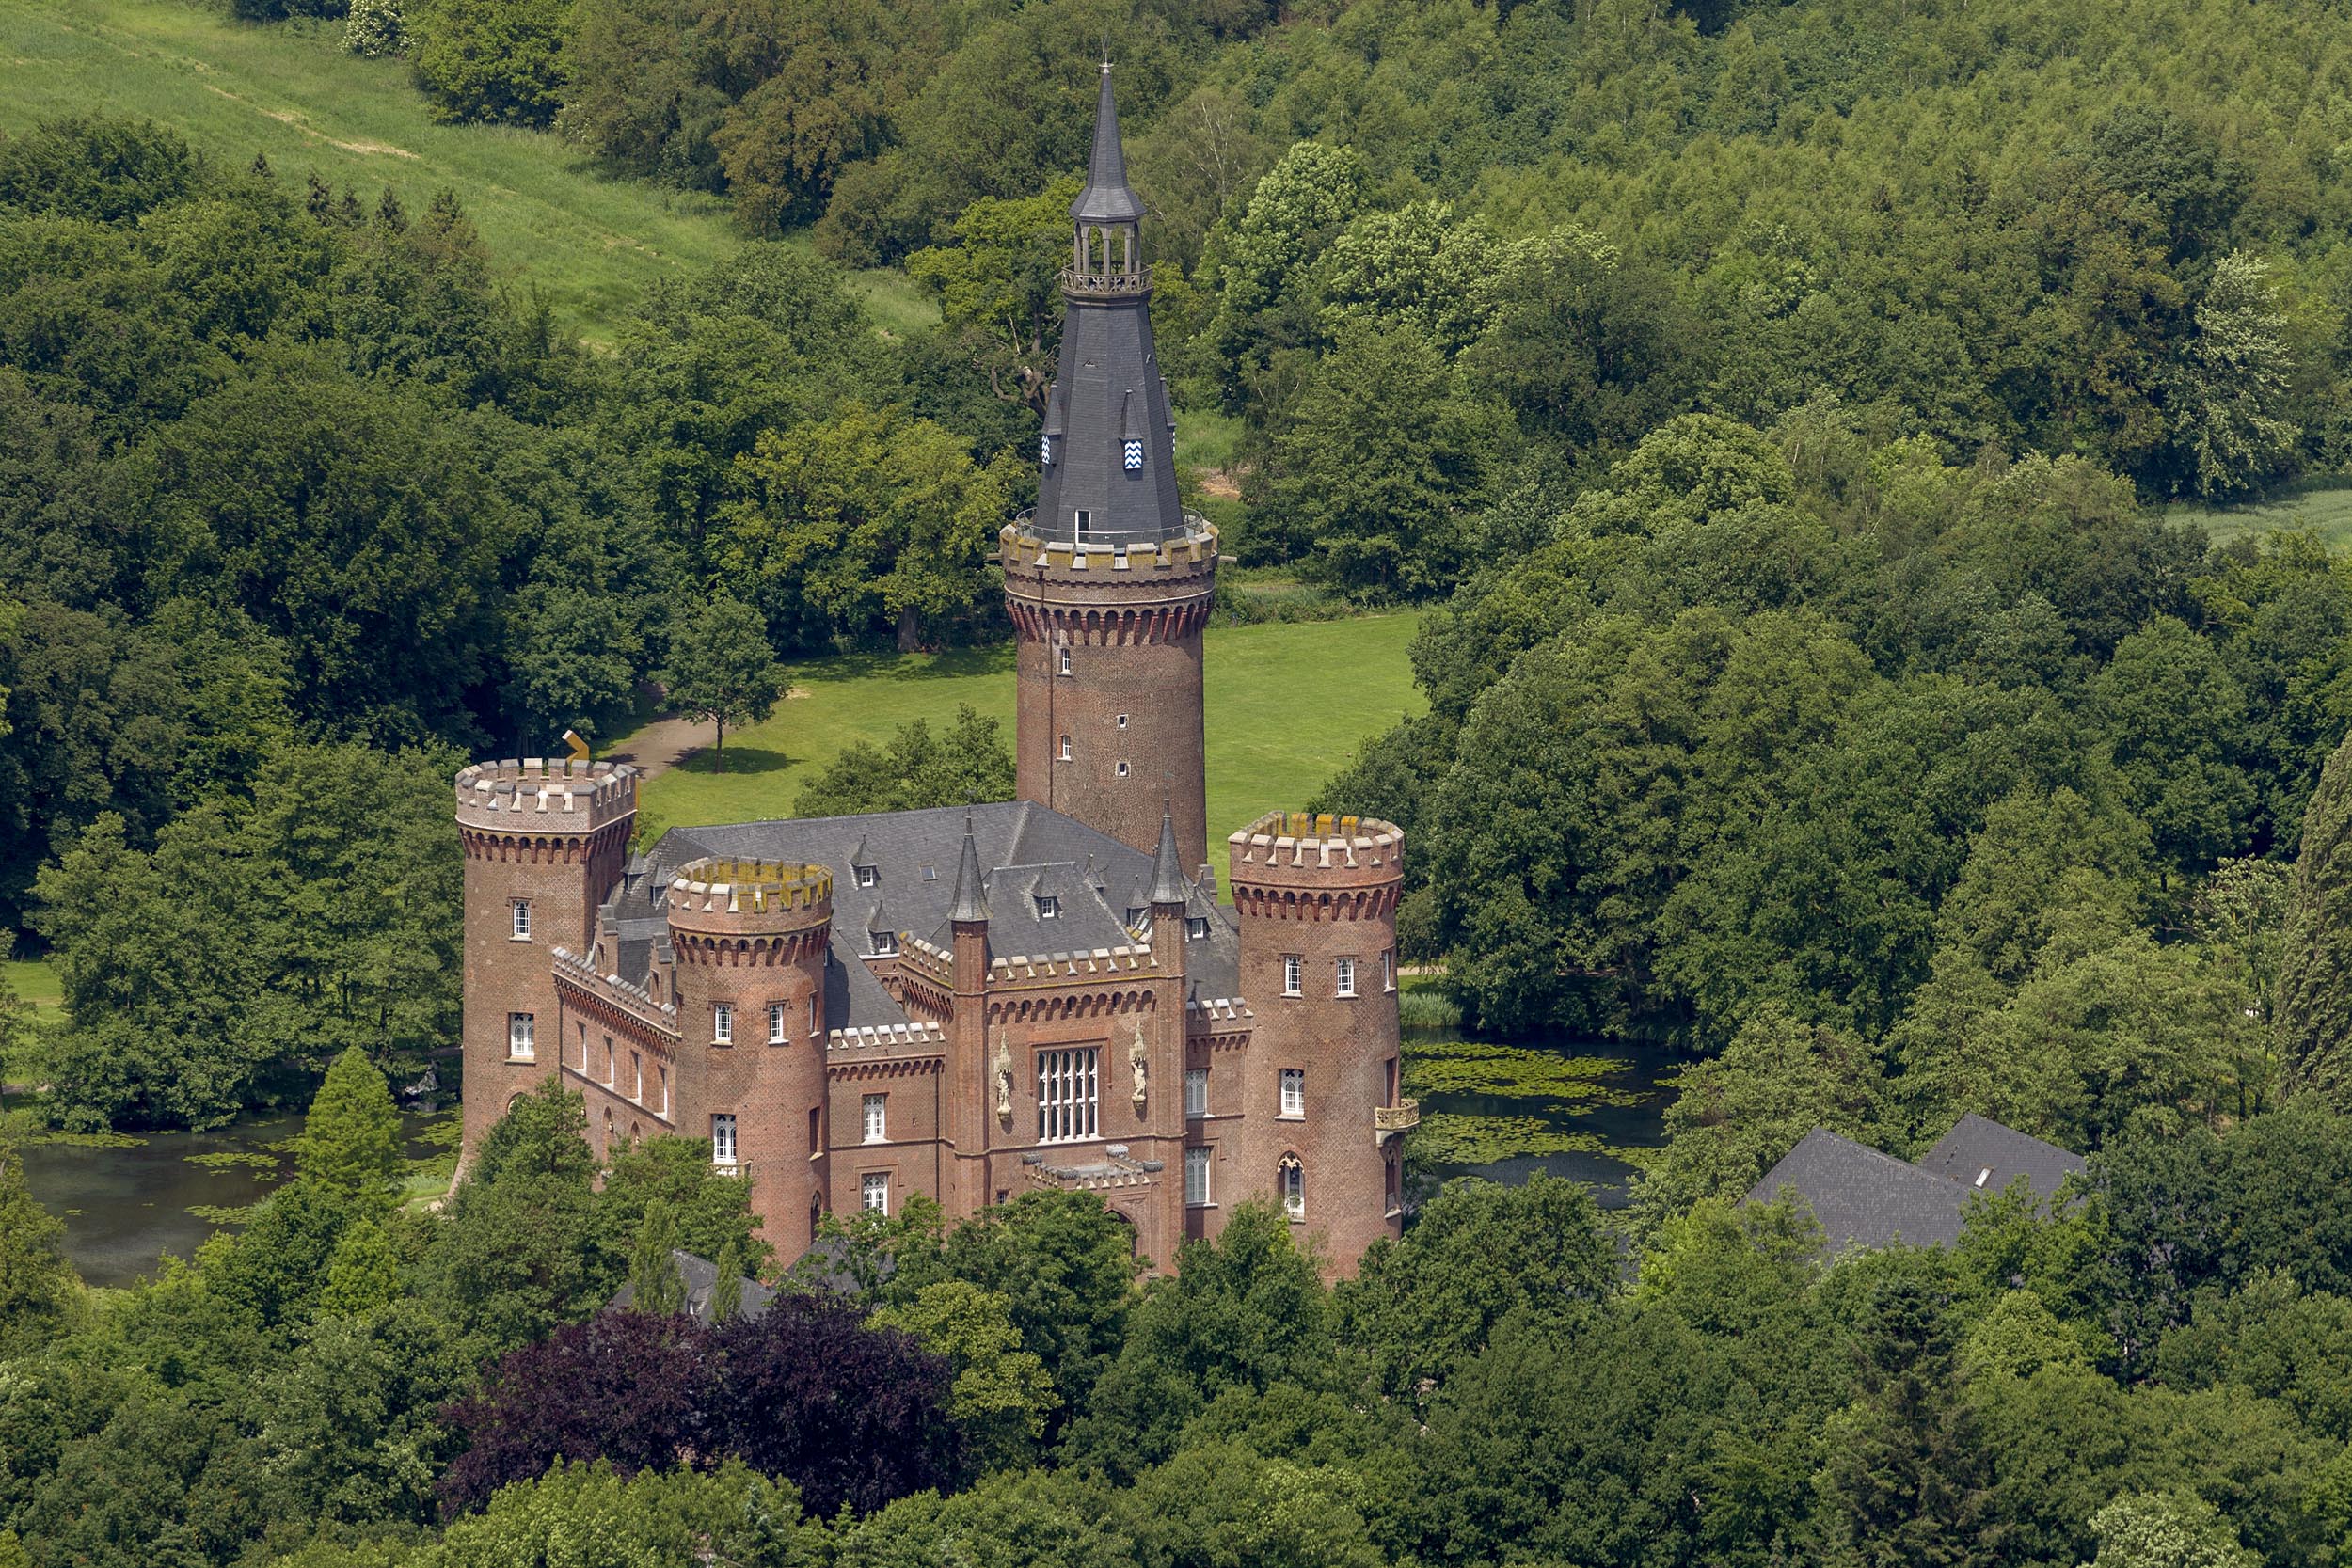 Schloss Moyland von oben, eingebettet in Wald und Wiese